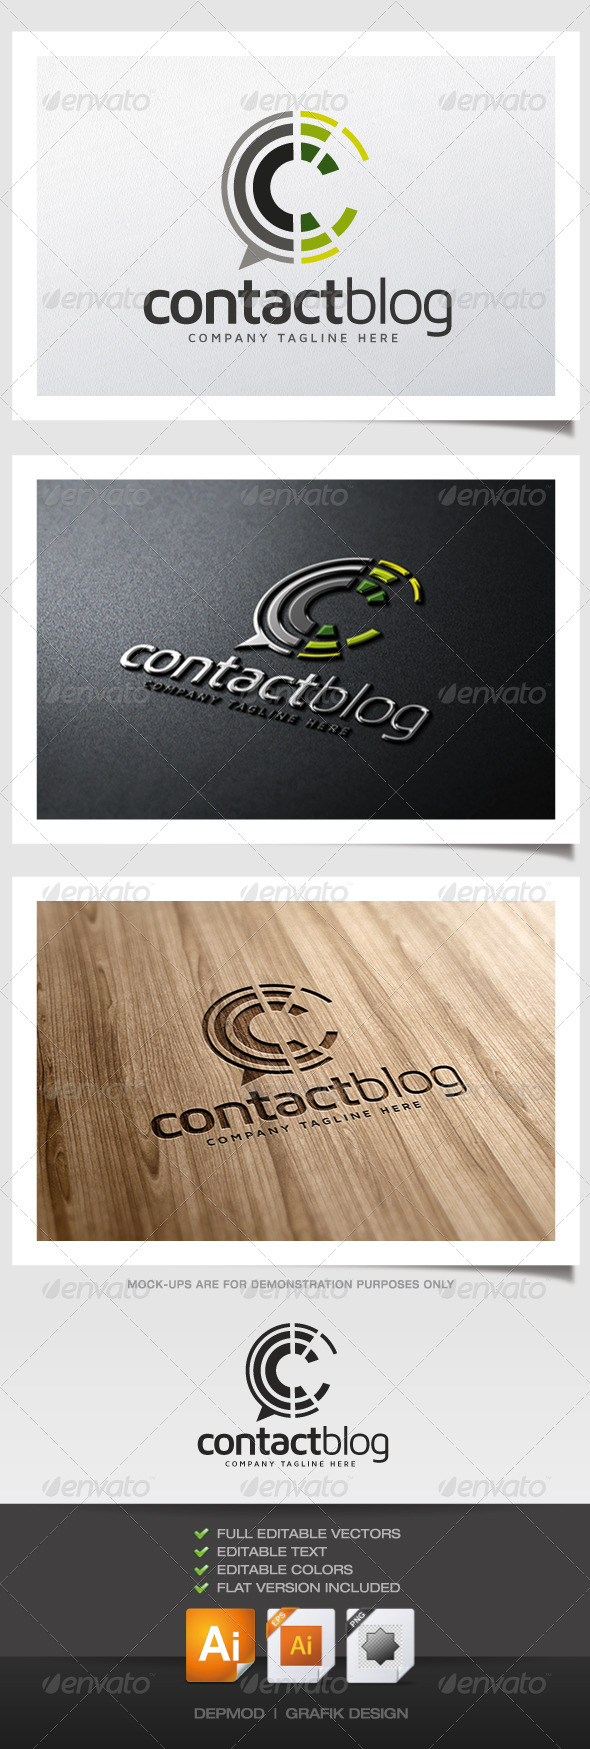 Contact Blog Logo